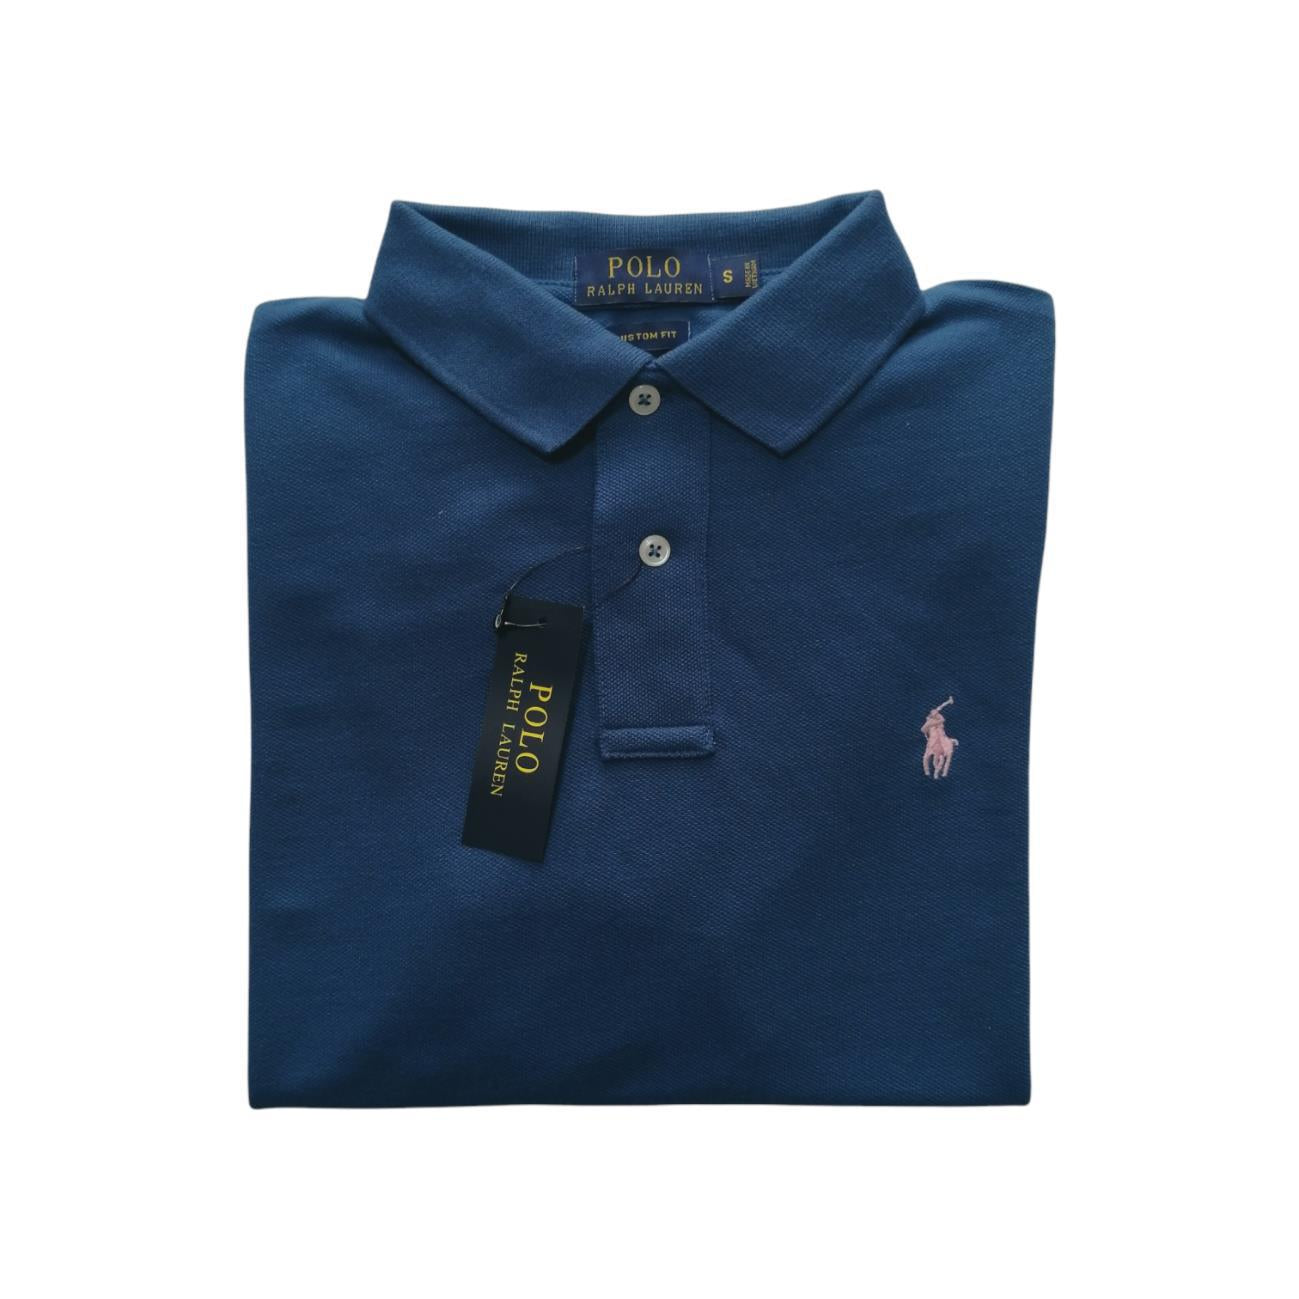 Camiseta tipo polo manga corta color azul Polo Ralph Lauren